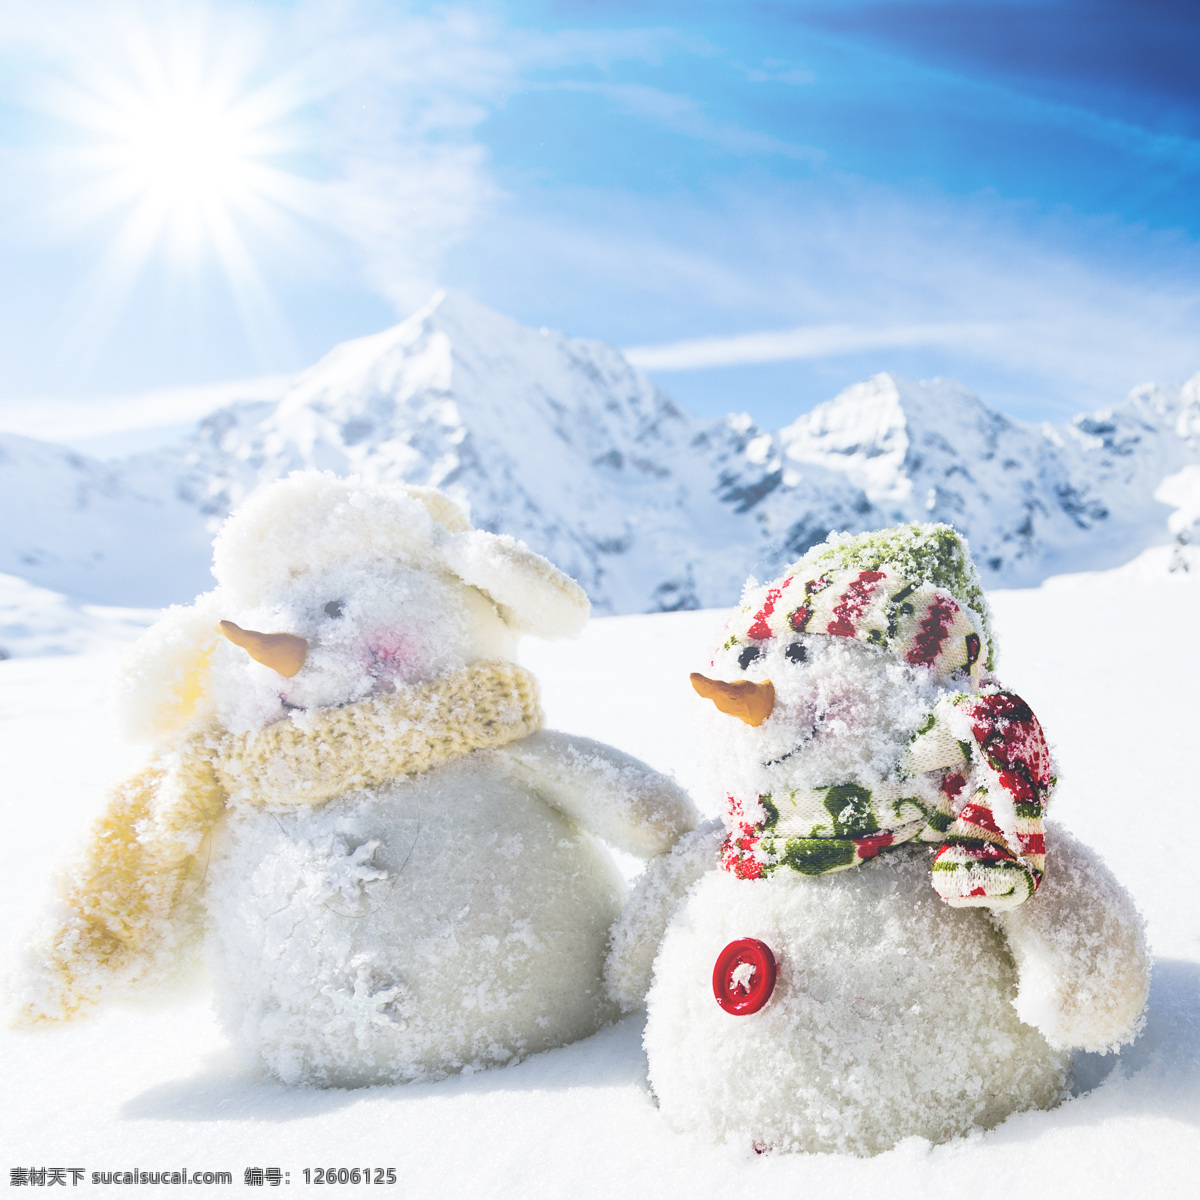 太阳 下 雪人 雪地 雪花 圣诞节 节日庆典 太阳下的雪人 蓝天 自然风景 其他人物 人物图片